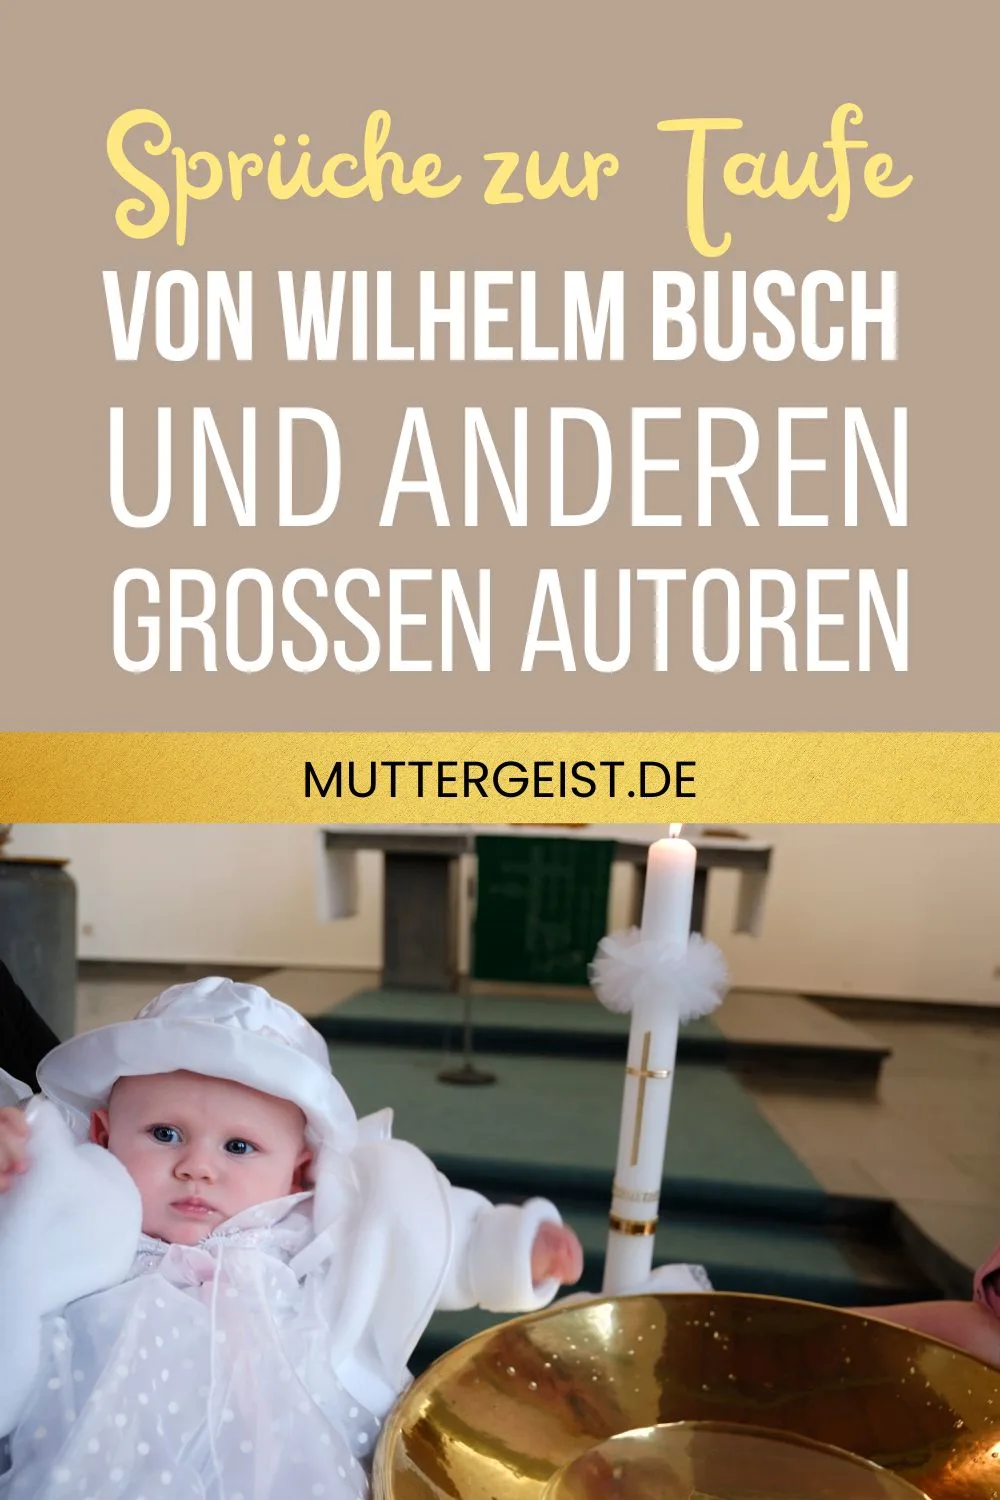 Sprüche zur Taufe von Wilhelm Busch und anderen großen Autoren Pinterest